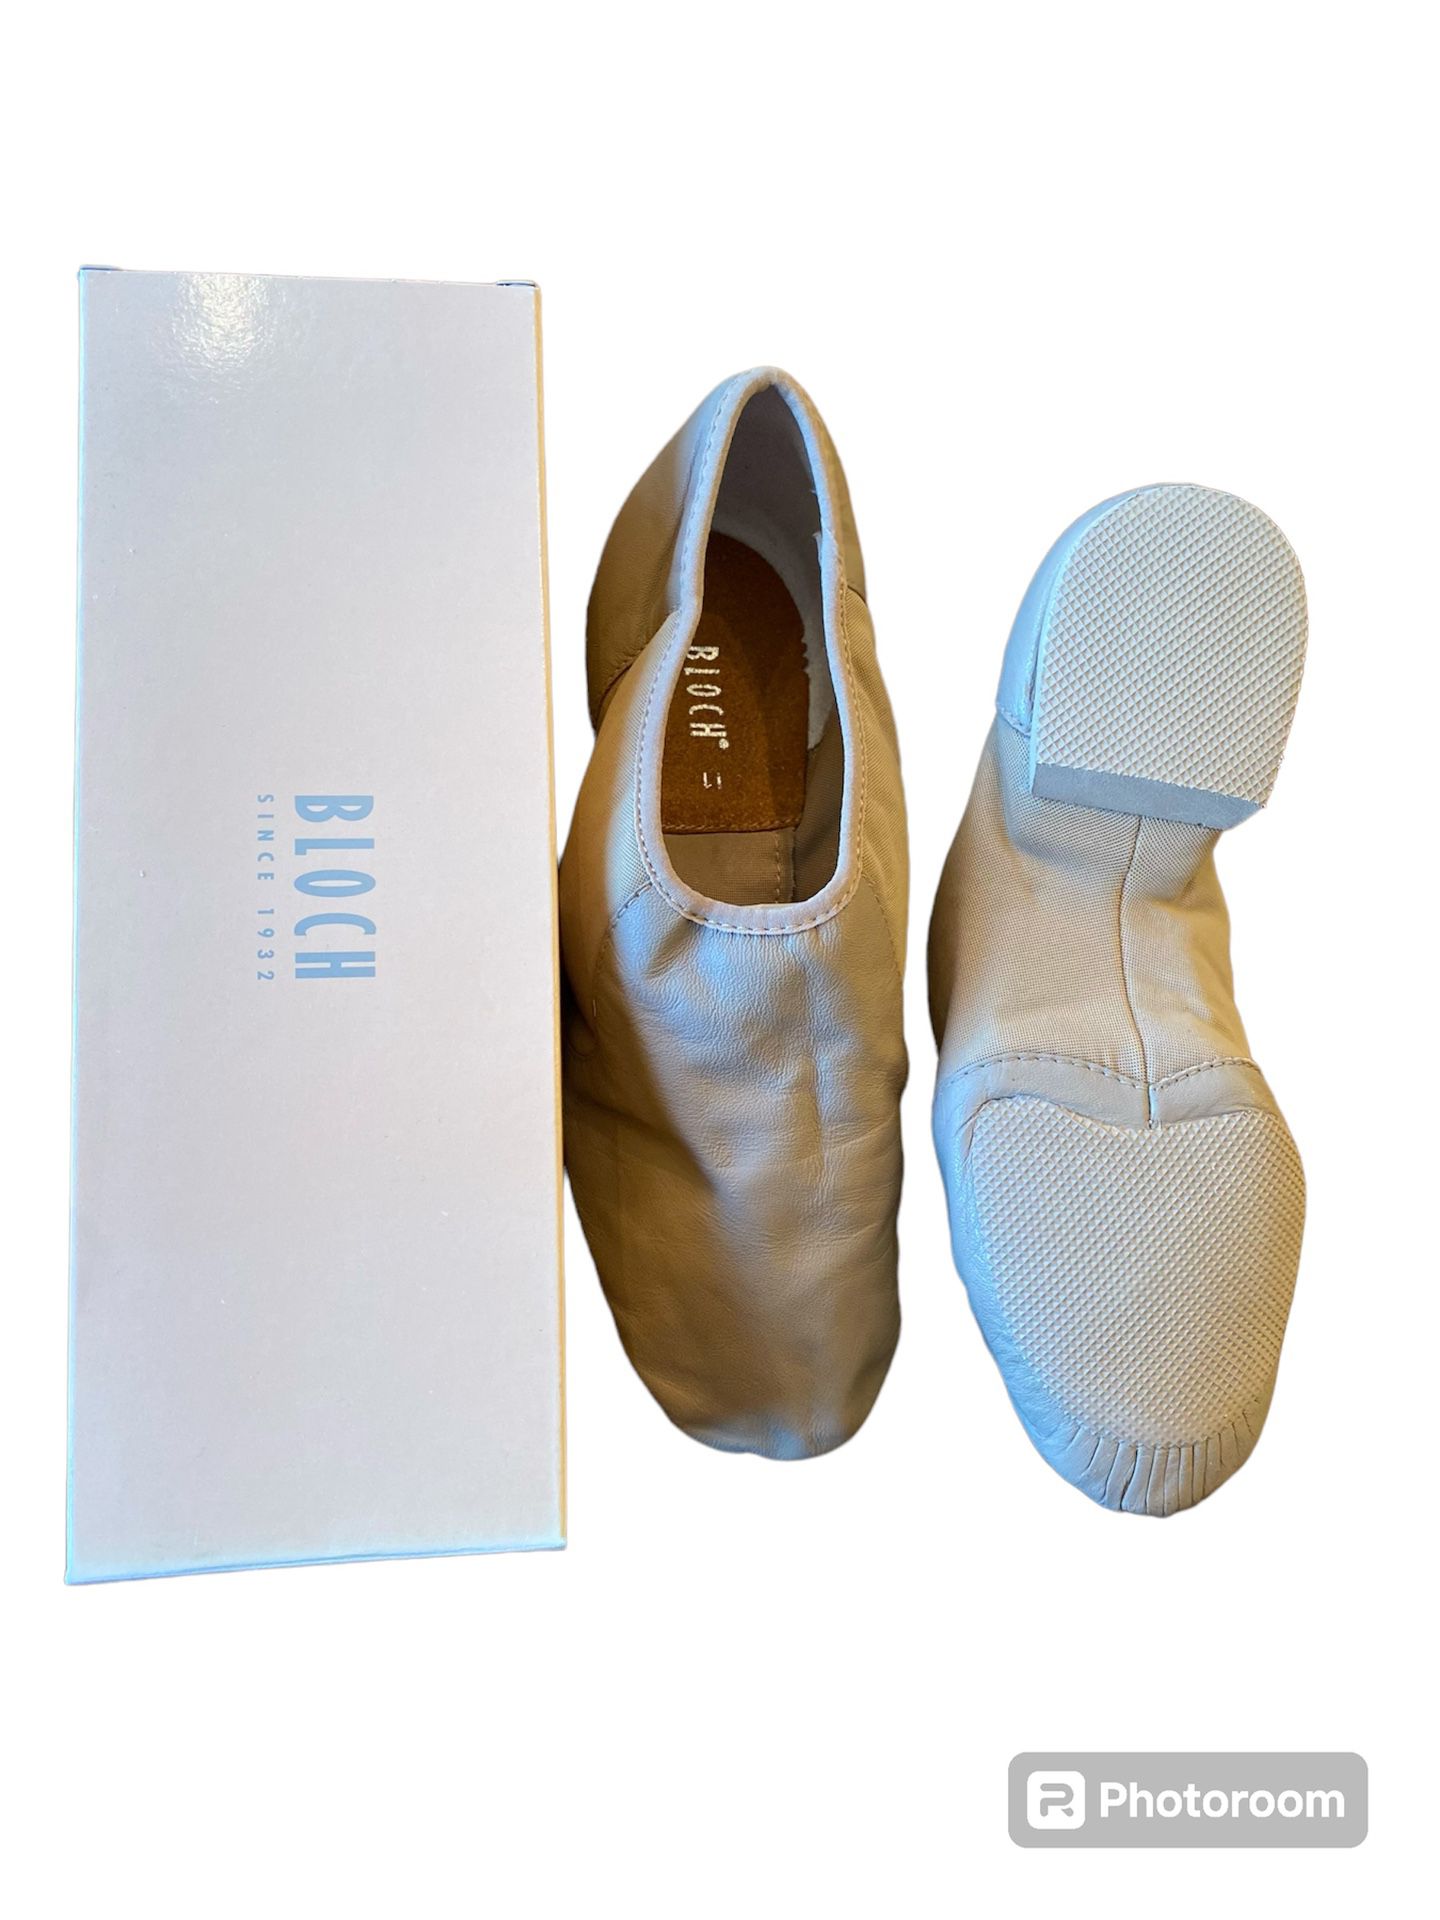 Bloch dance shoes